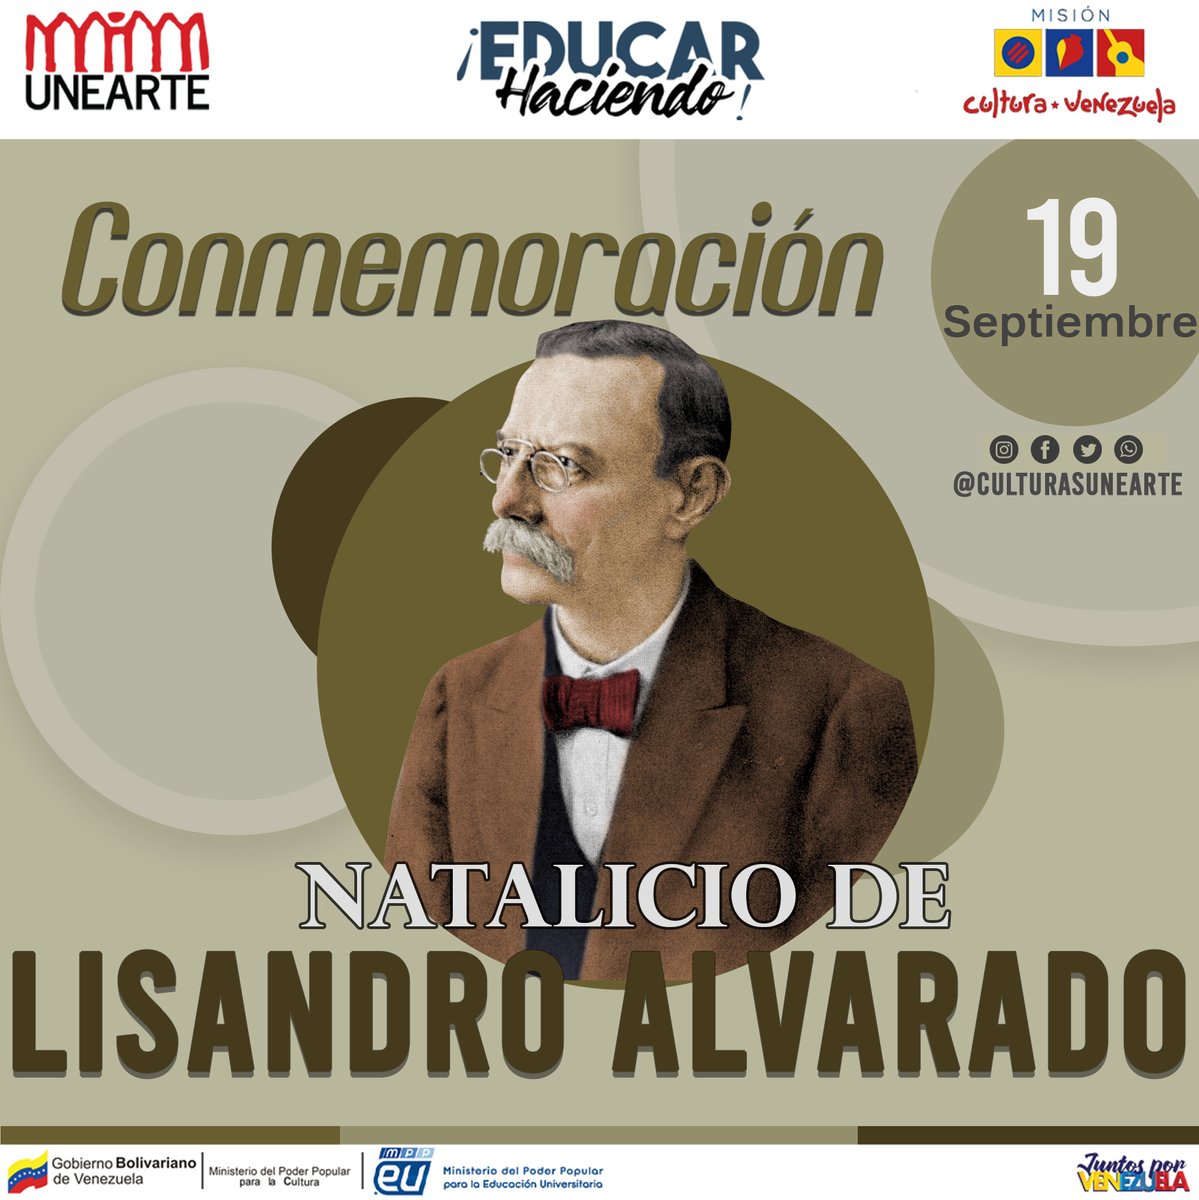 Lisandro Alvarado #19 de septiembre, fue un médico, naturalista, historiador, etnólogo y lingüista venezolano. #UNEARTE #DIRECCIONDECULTURA